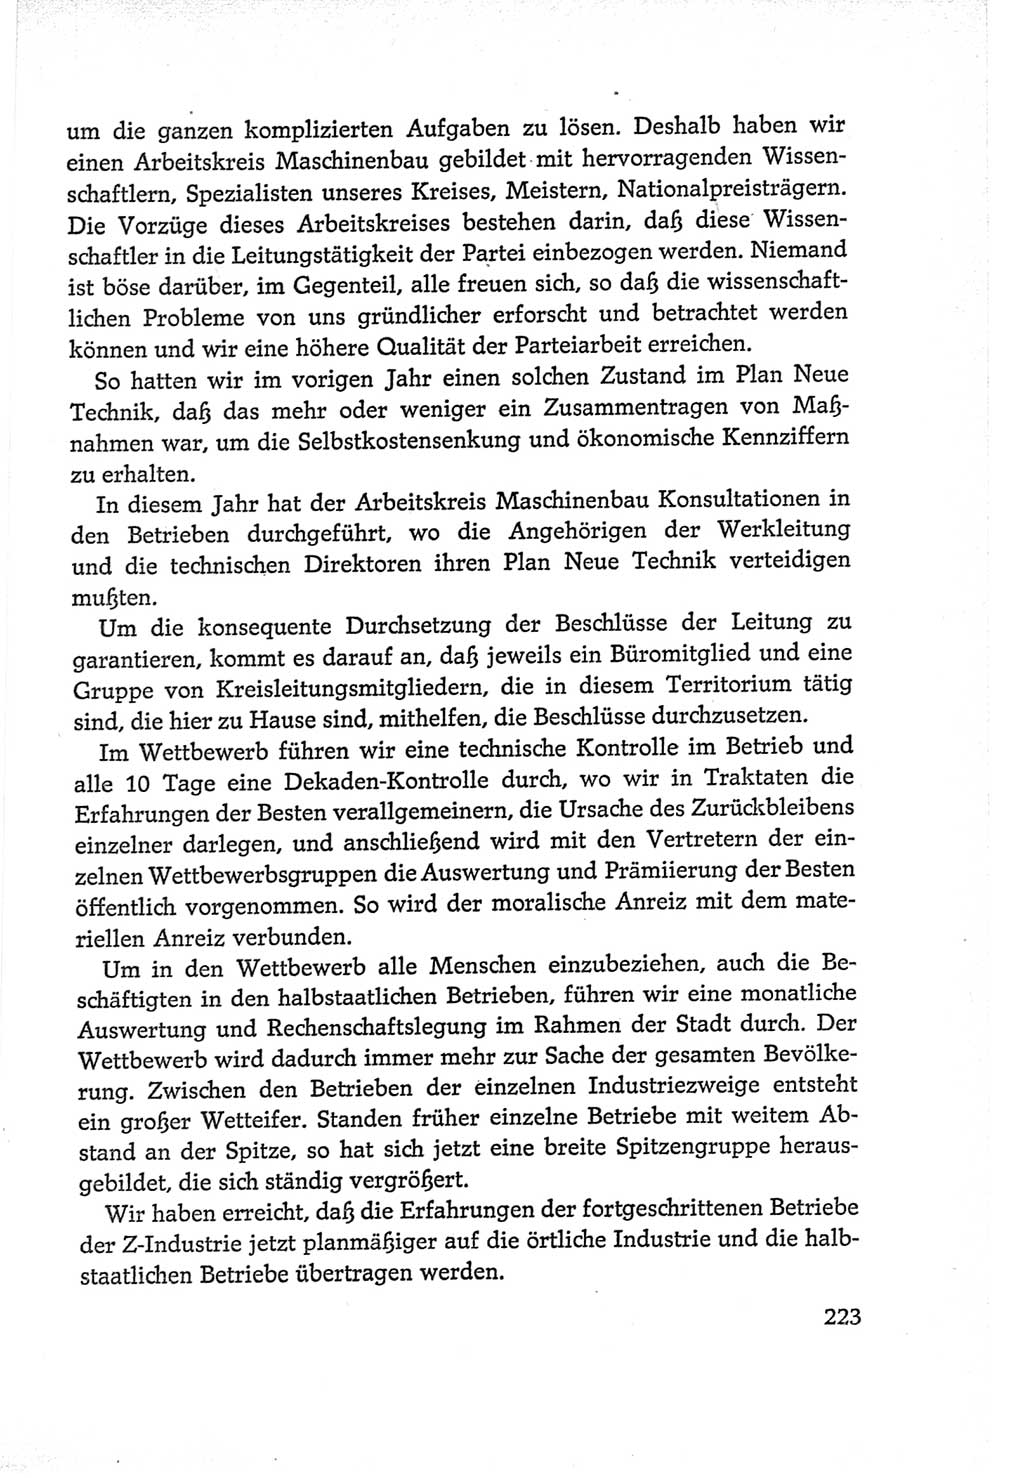 Protokoll der Verhandlungen des Ⅵ. Parteitages der Sozialistischen Einheitspartei Deutschlands (SED) [Deutsche Demokratische Republik (DDR)] 1963, Band Ⅱ, Seite 223 (Prot. Verh. Ⅵ. PT SED DDR 1963, Bd. Ⅱ, S. 223)